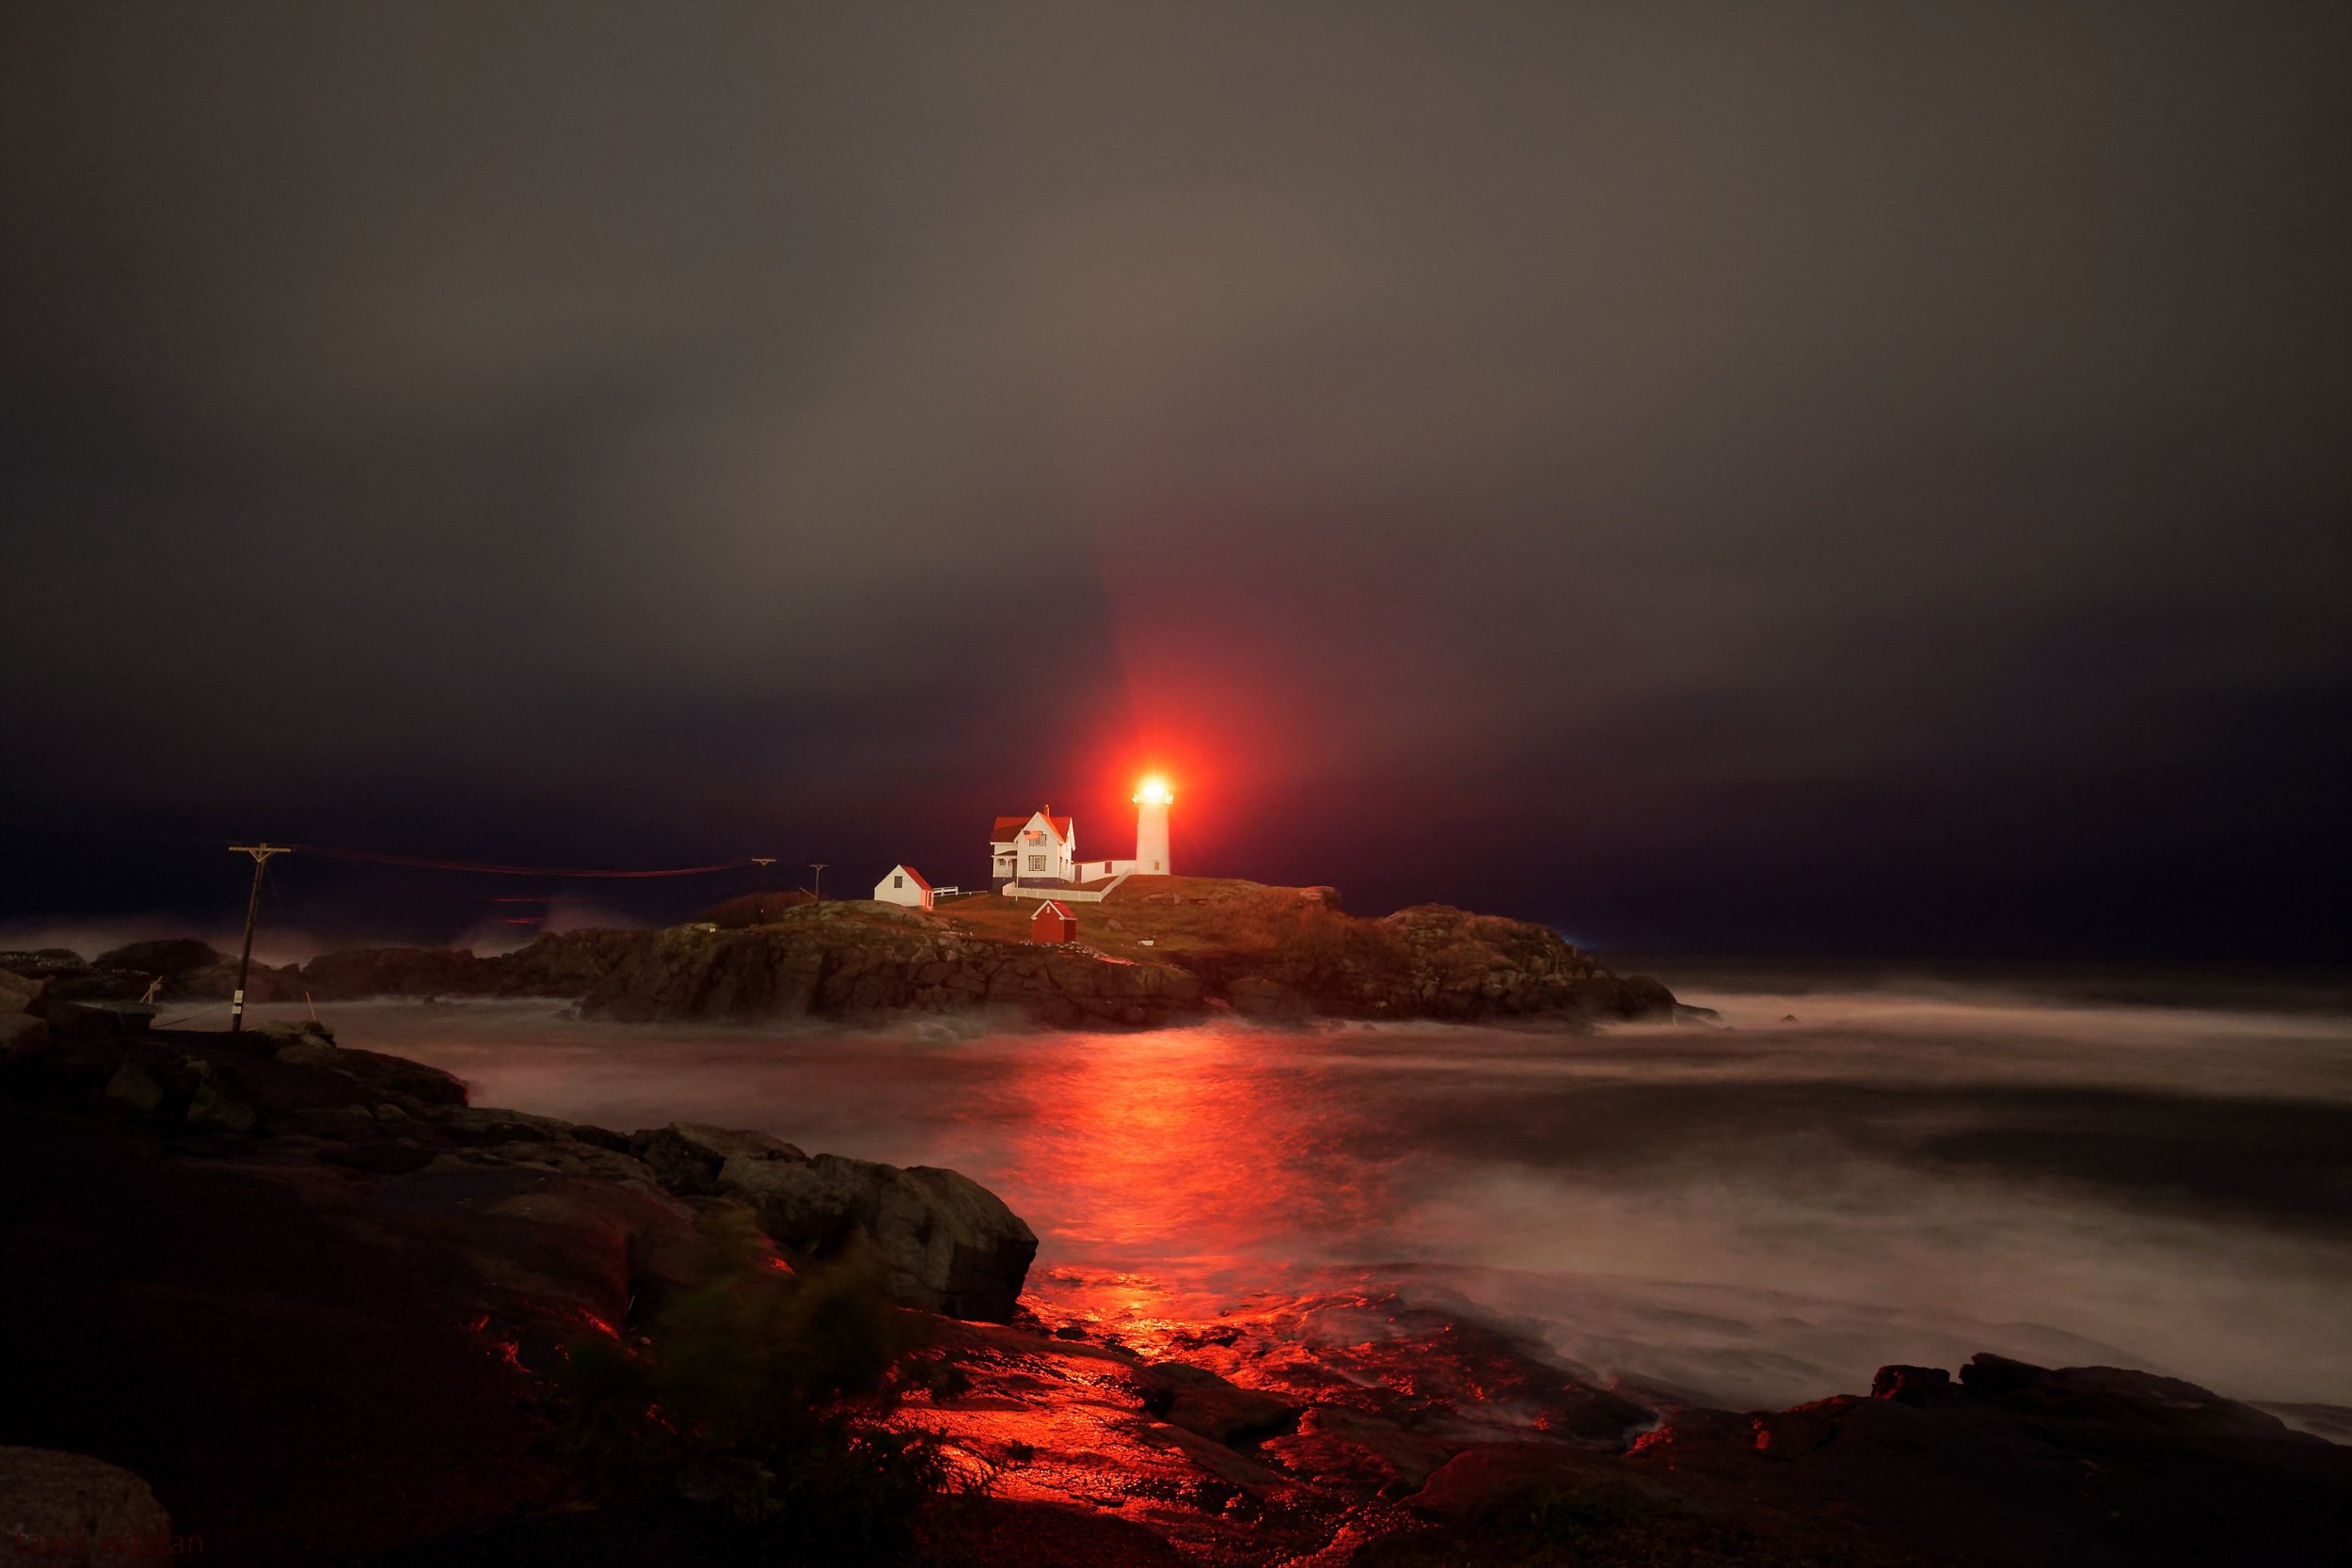 Lighthouse #3. Maine, 2016.

